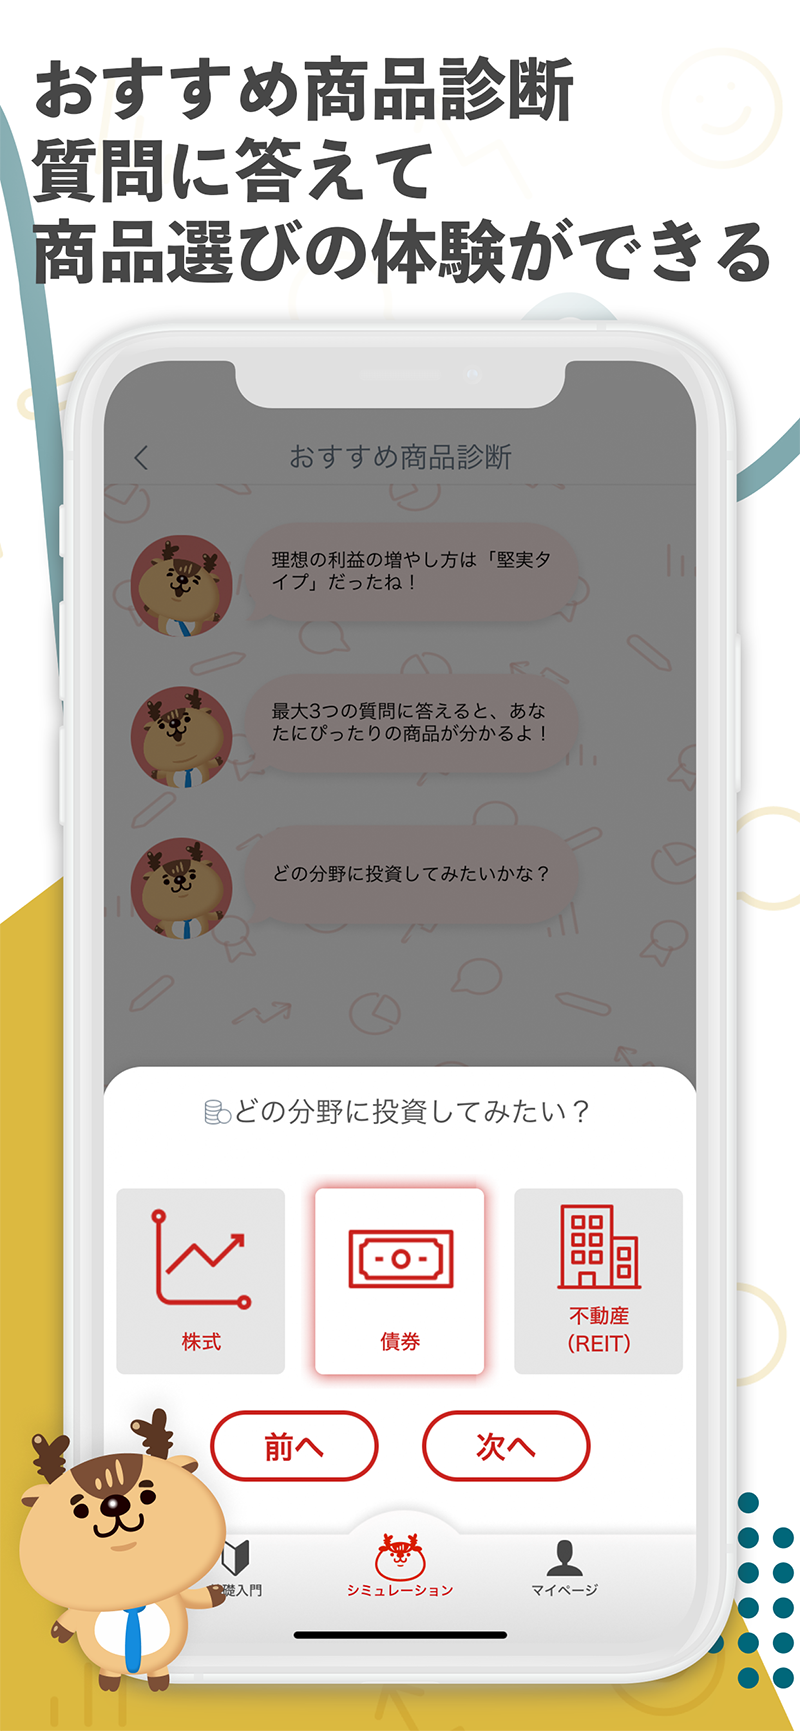 つみたて投資学習アプリ Powered by トウシカ3